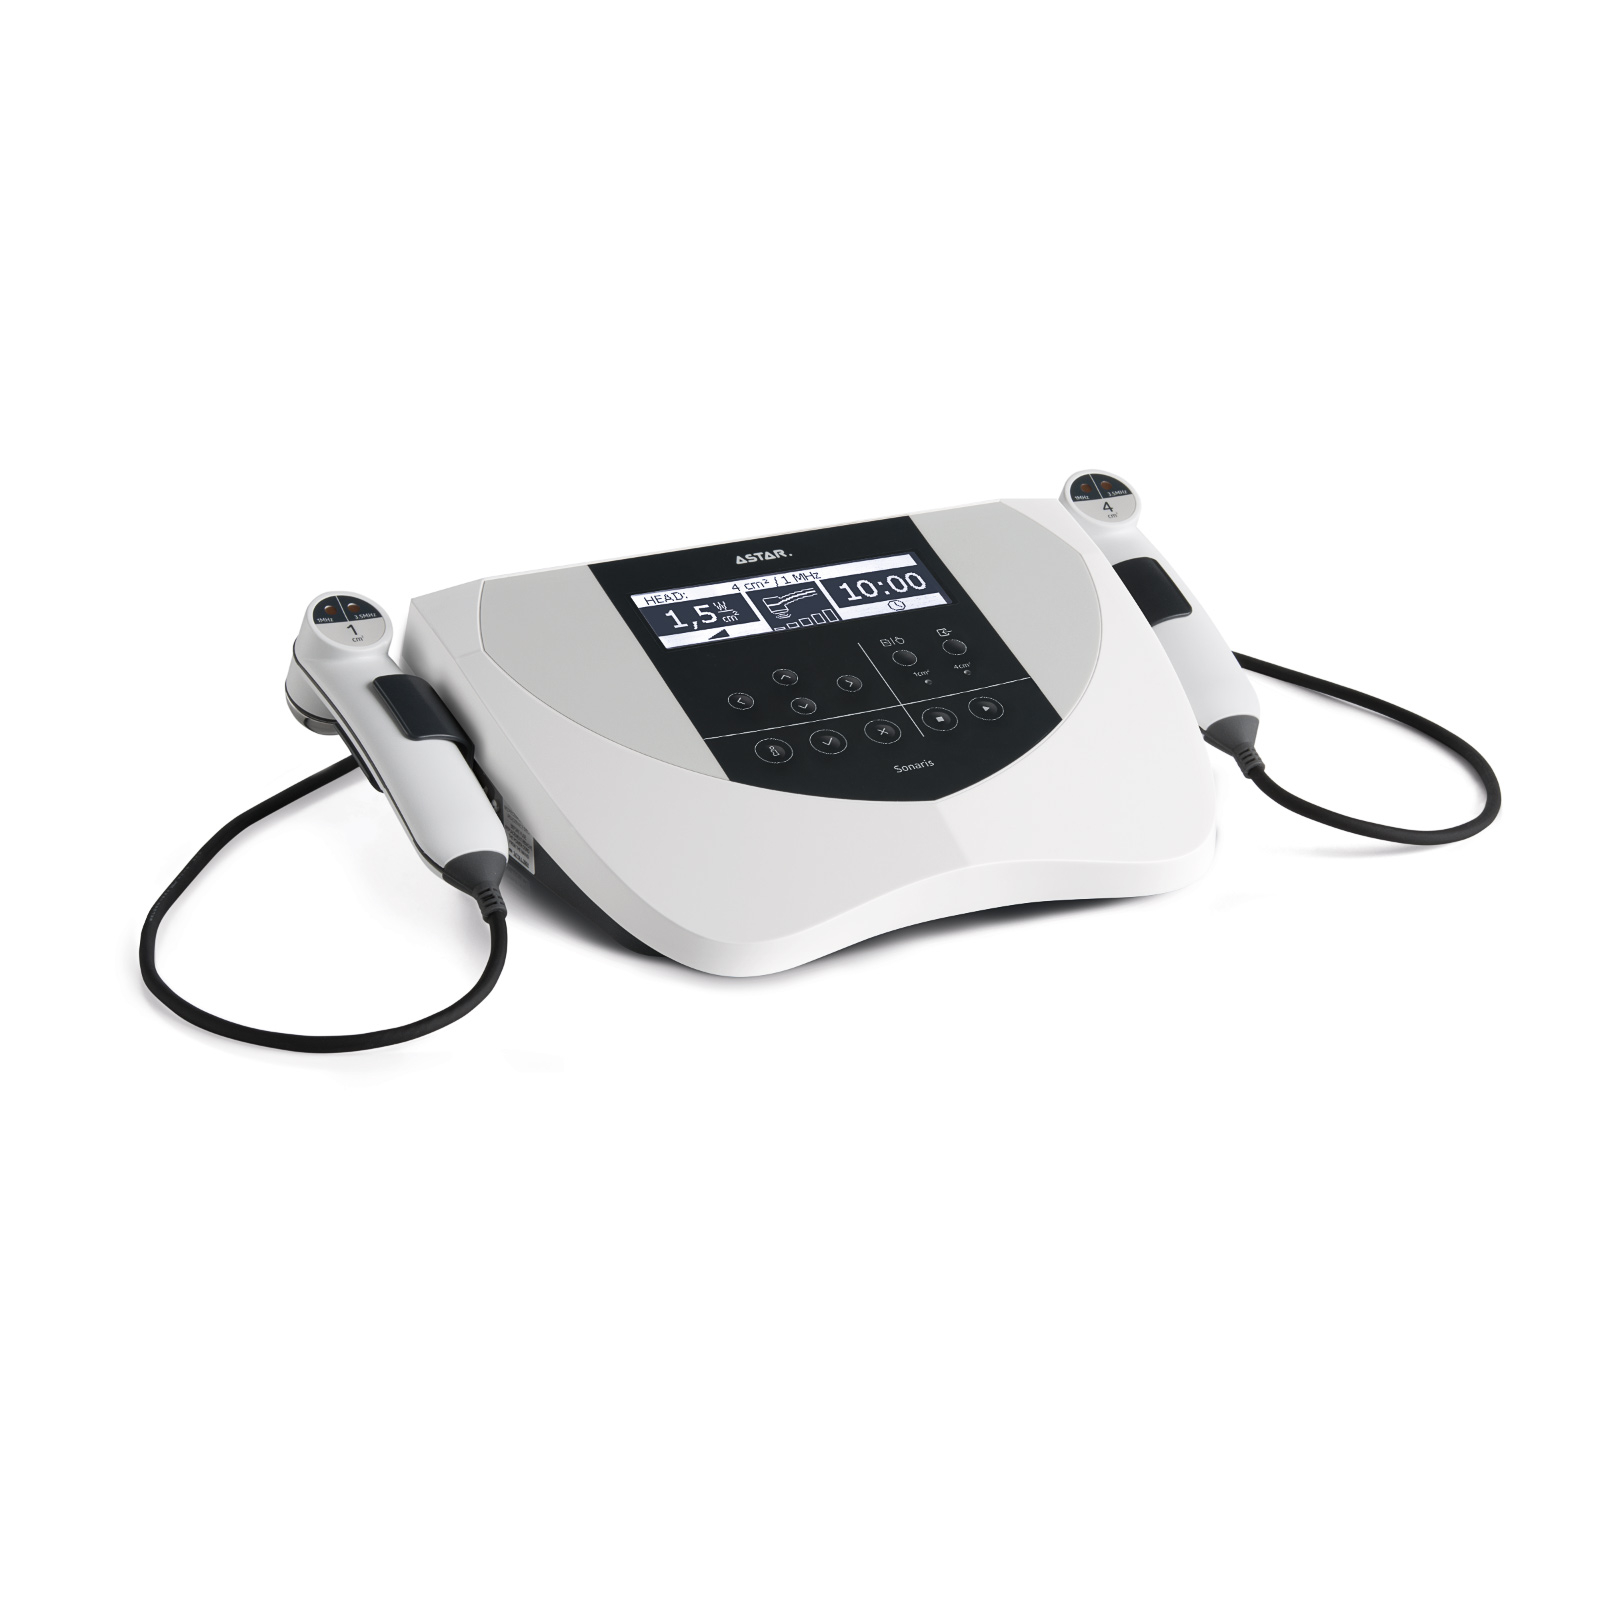 Sonaris ASTAR, l'appareil à ultrasons pour les Kinésithérapeutes